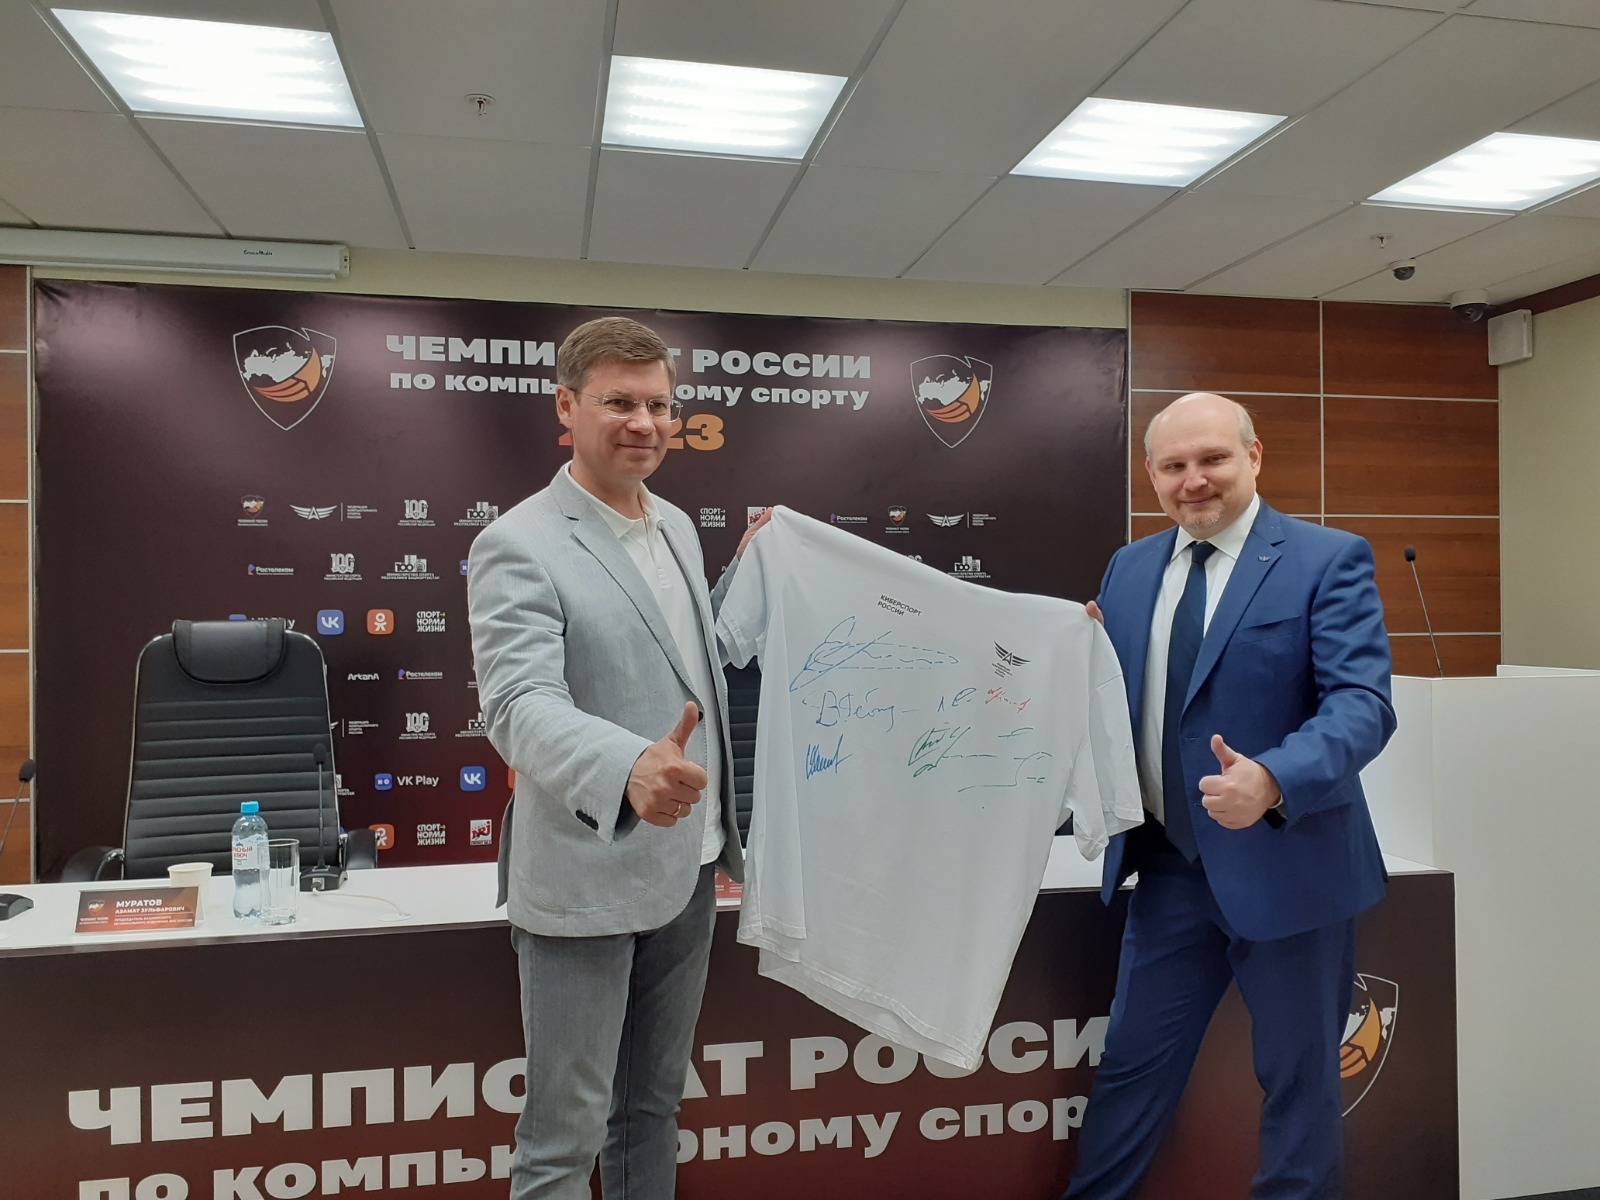 В столице Башкирии на чемпионате России по киберспорту будет разыгран крупный денежный приз